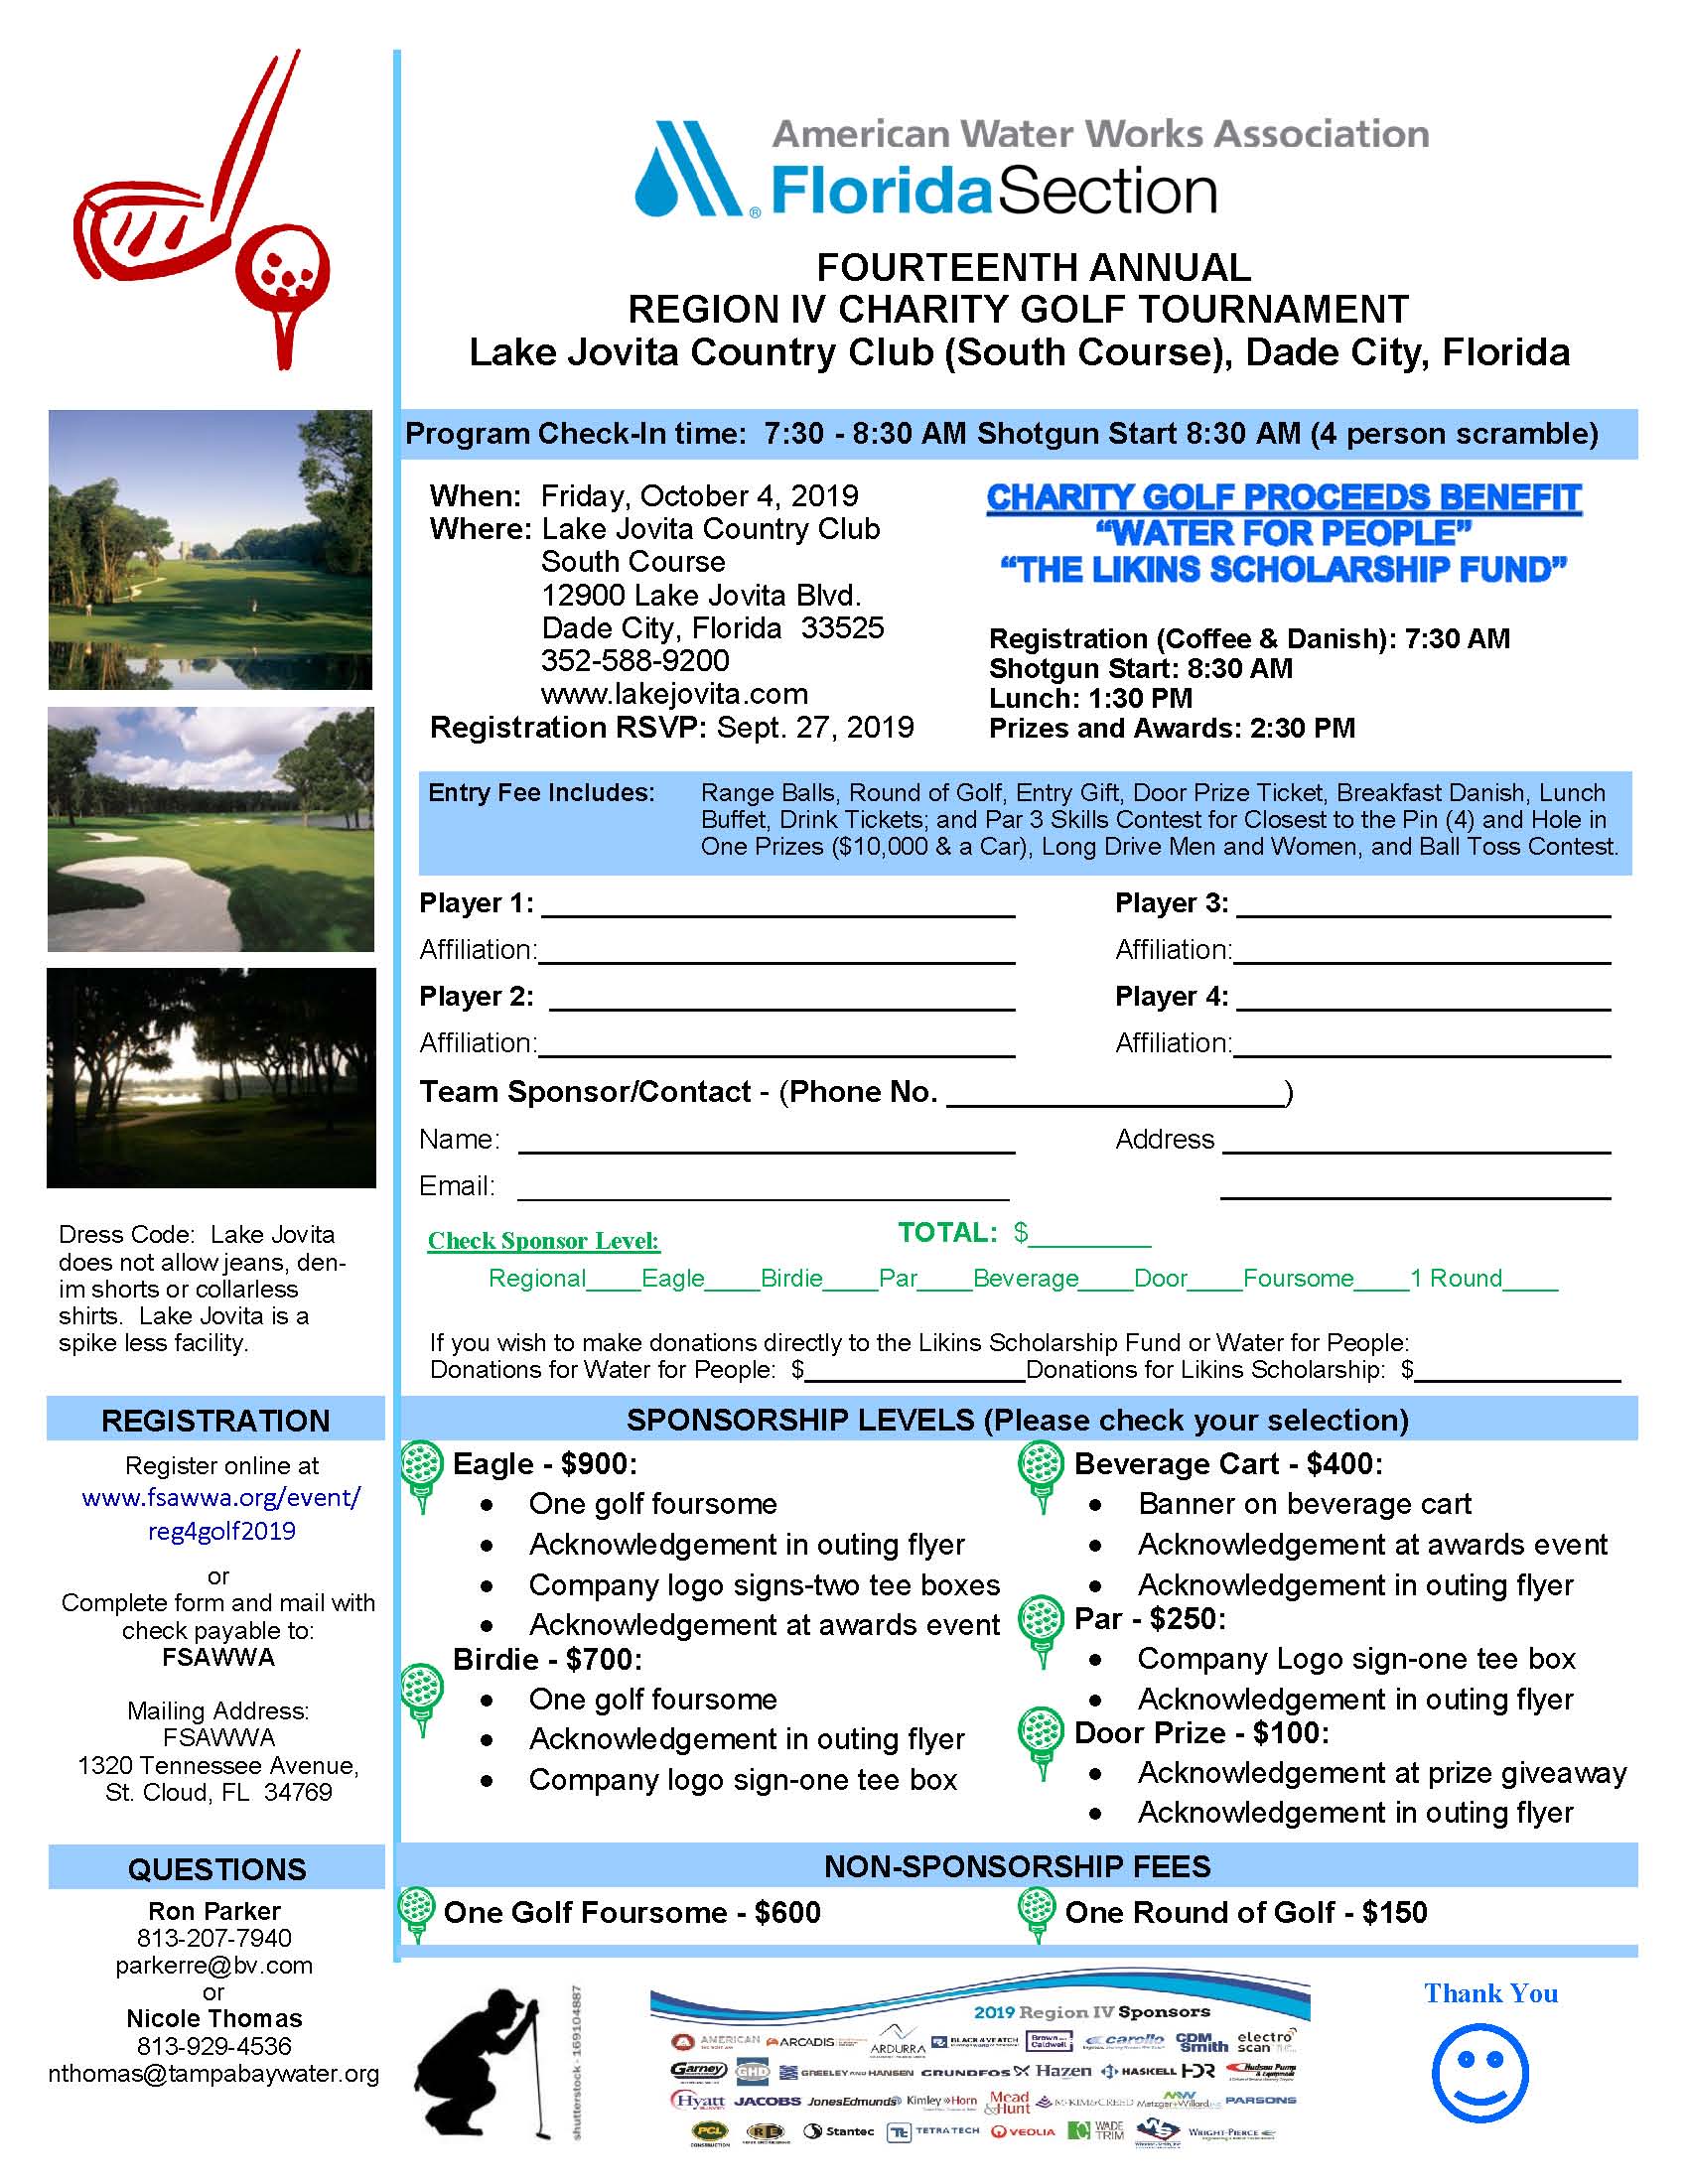 Golf Tournament Sign Up Sheet Template from www.fsawwa.org